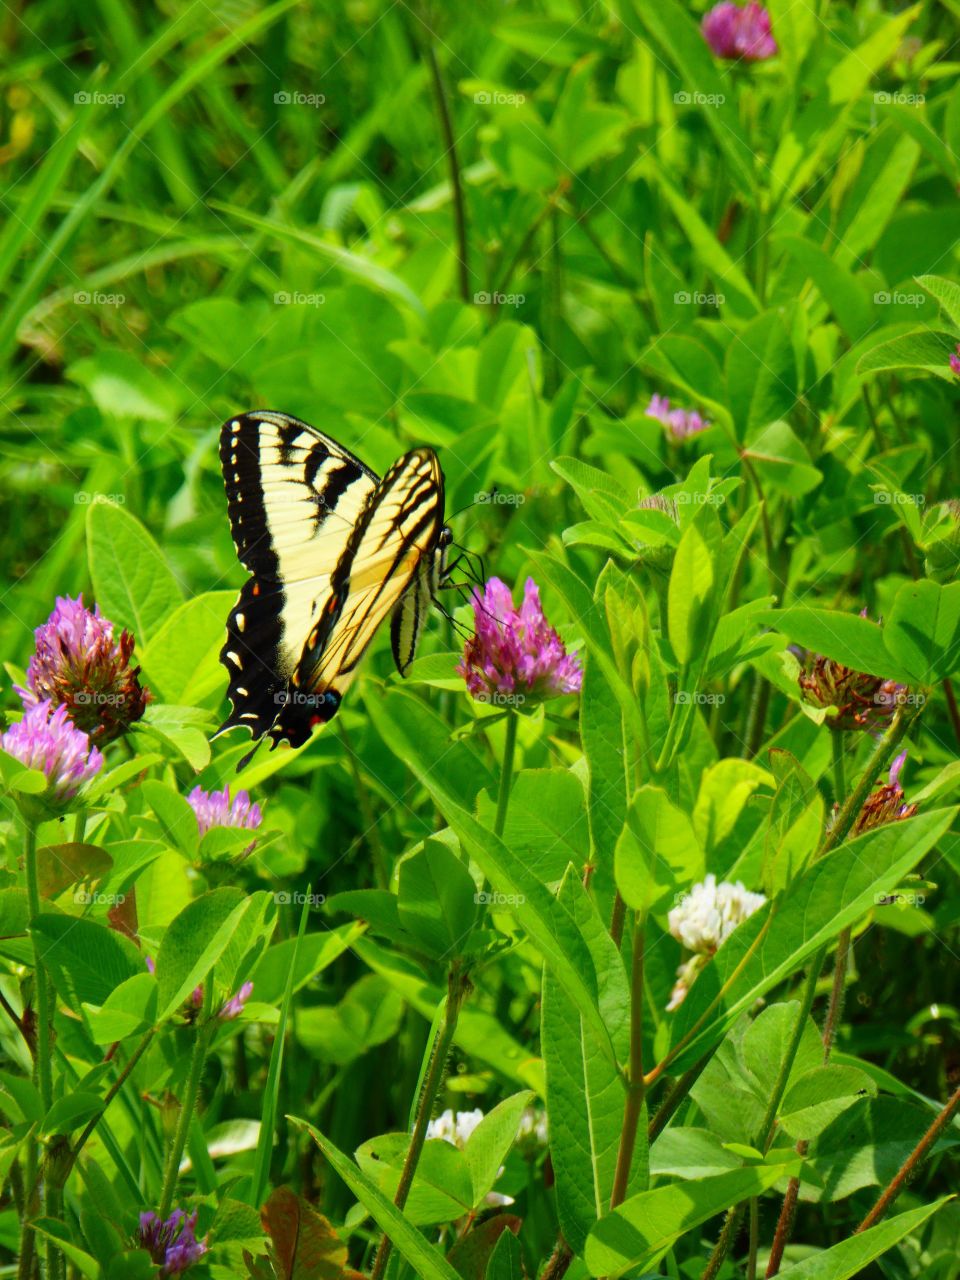 Butterfly in field 8